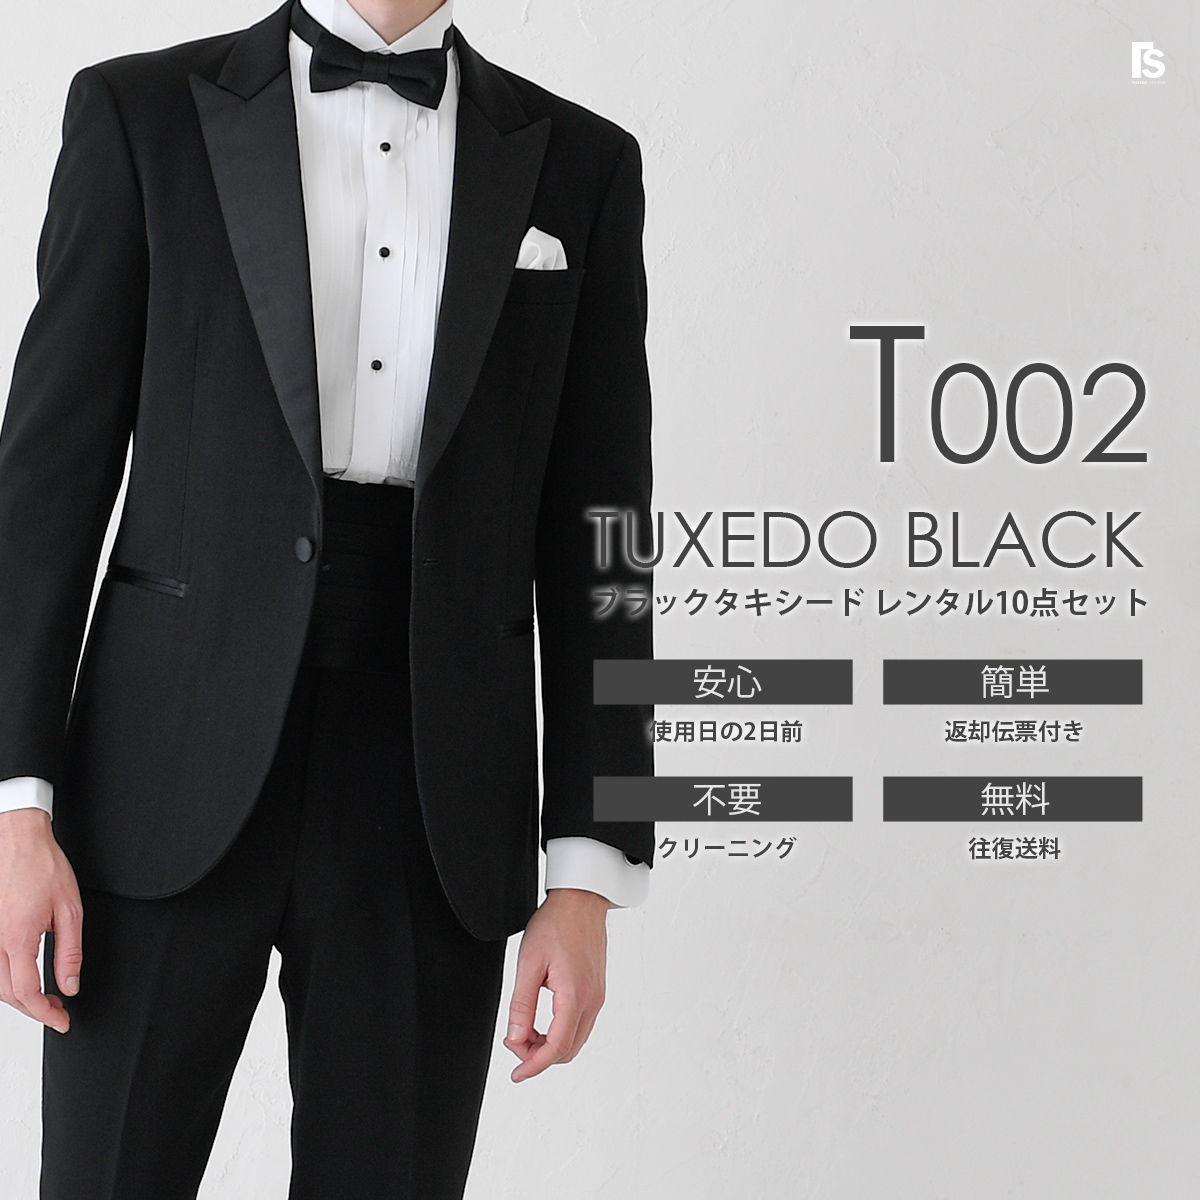  чёрный смокинг T002pi-k гонг peru[ в аренду ]11 позиций комплект черный Thai можно выбрать бабочка галстук [ свадьба * ряд сиденье * party презентация исполнение . гость .. sama 2 следующий .]